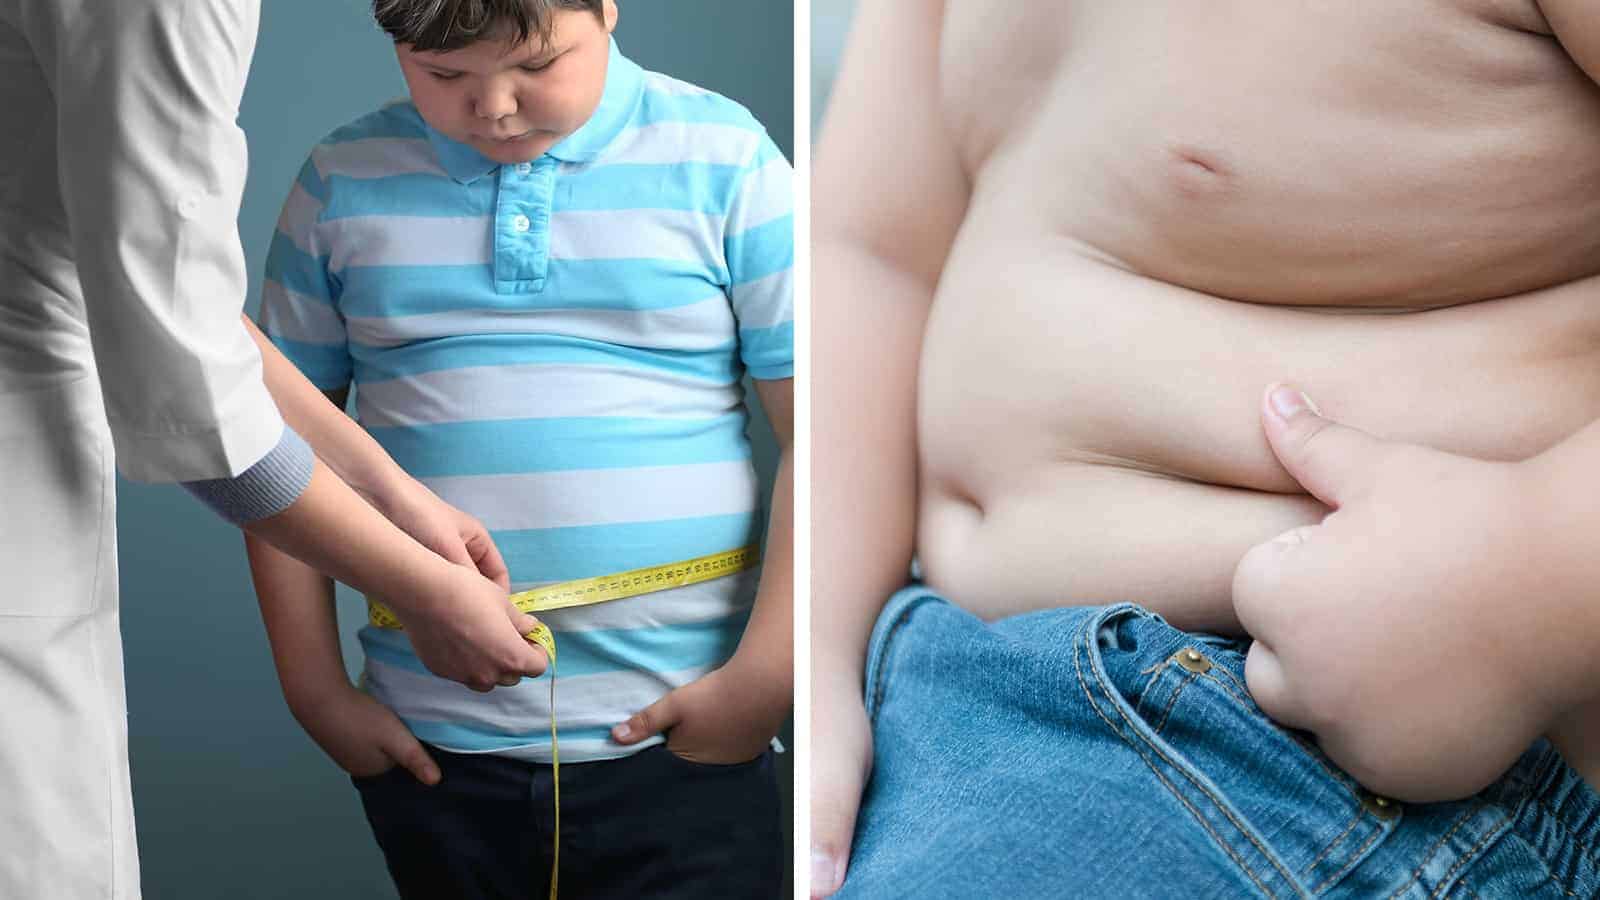 10 Things Causing Skyrocketing Childhood Obesity in America